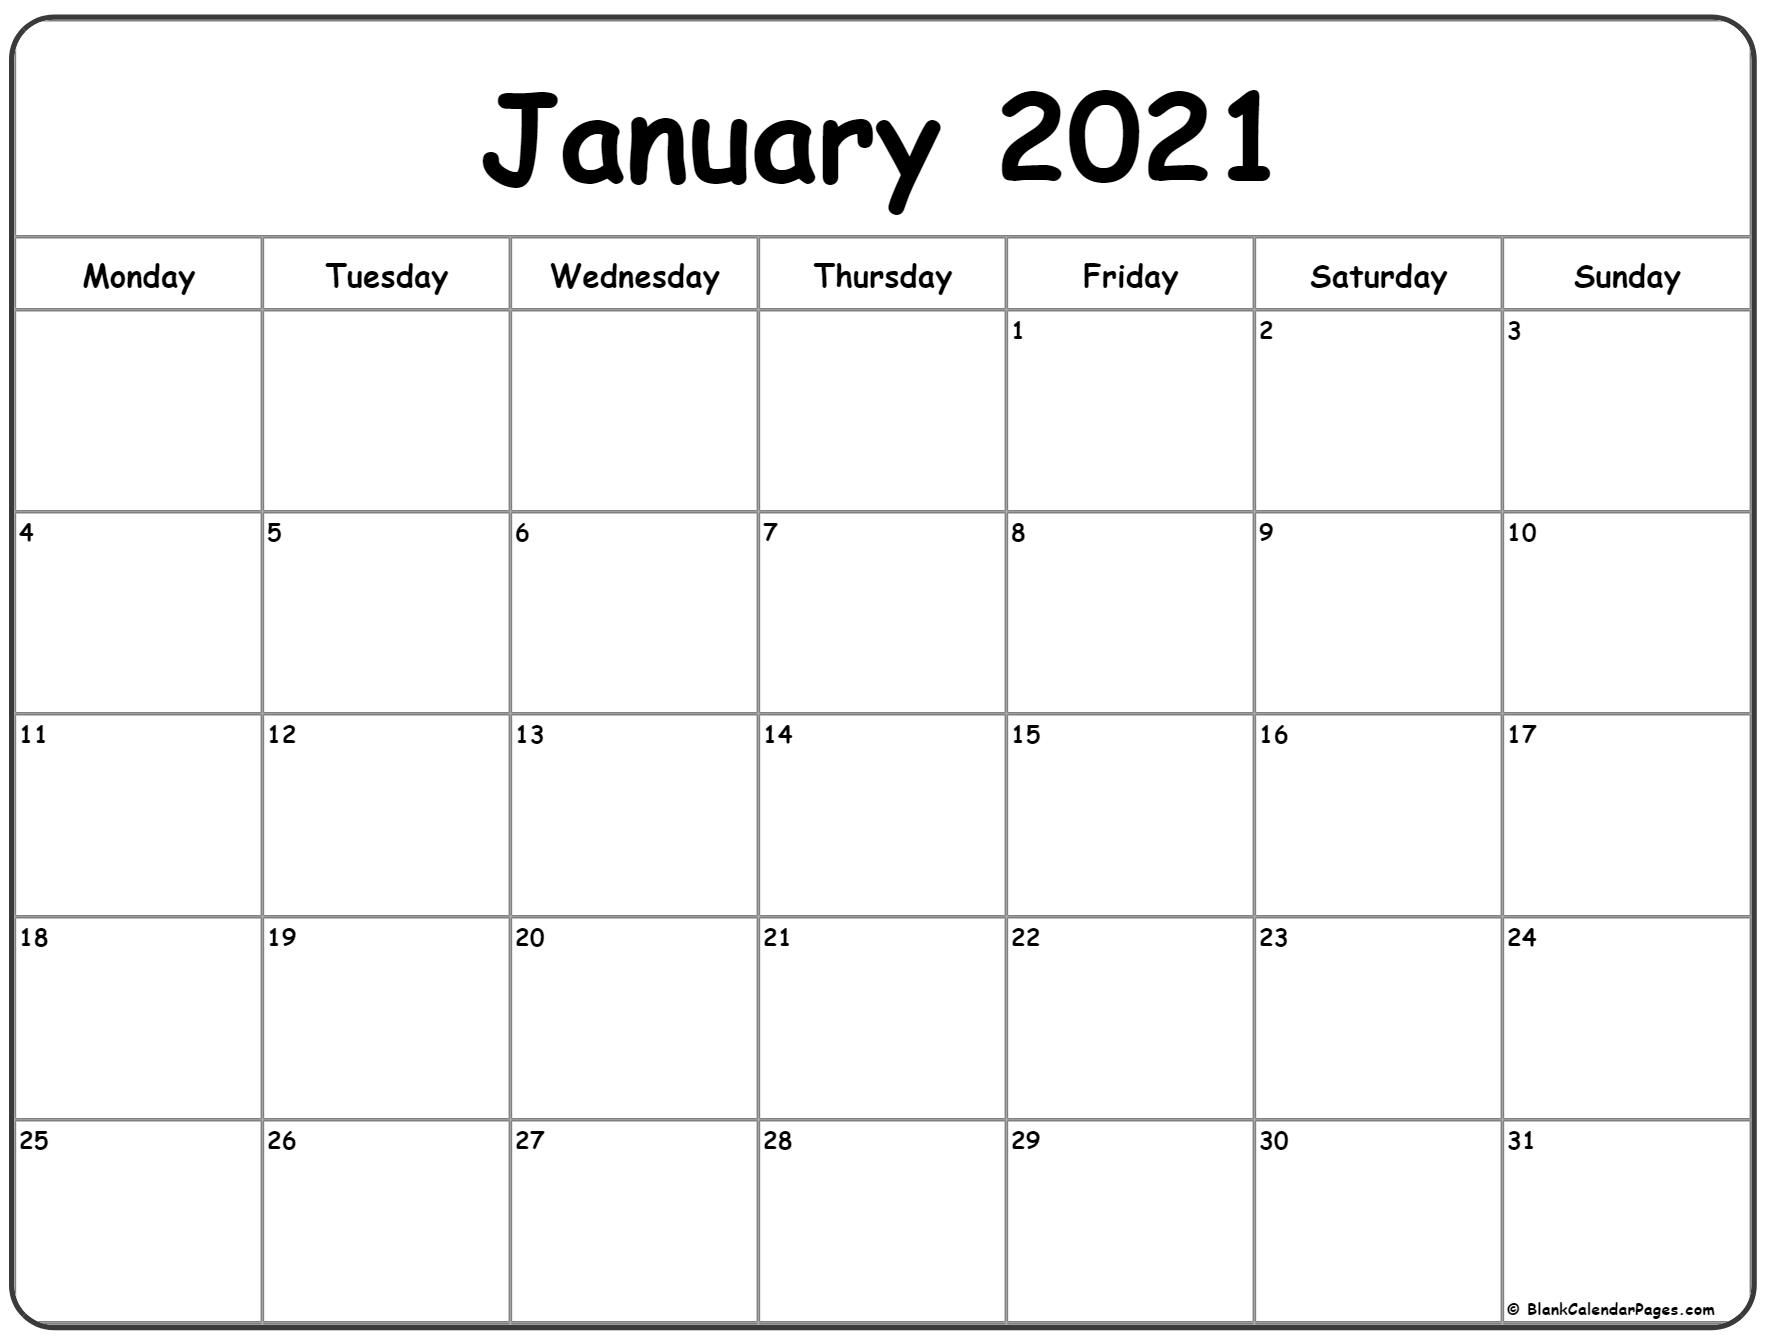 Calendar Monday Through Friday 2021 - Example Calendar ...